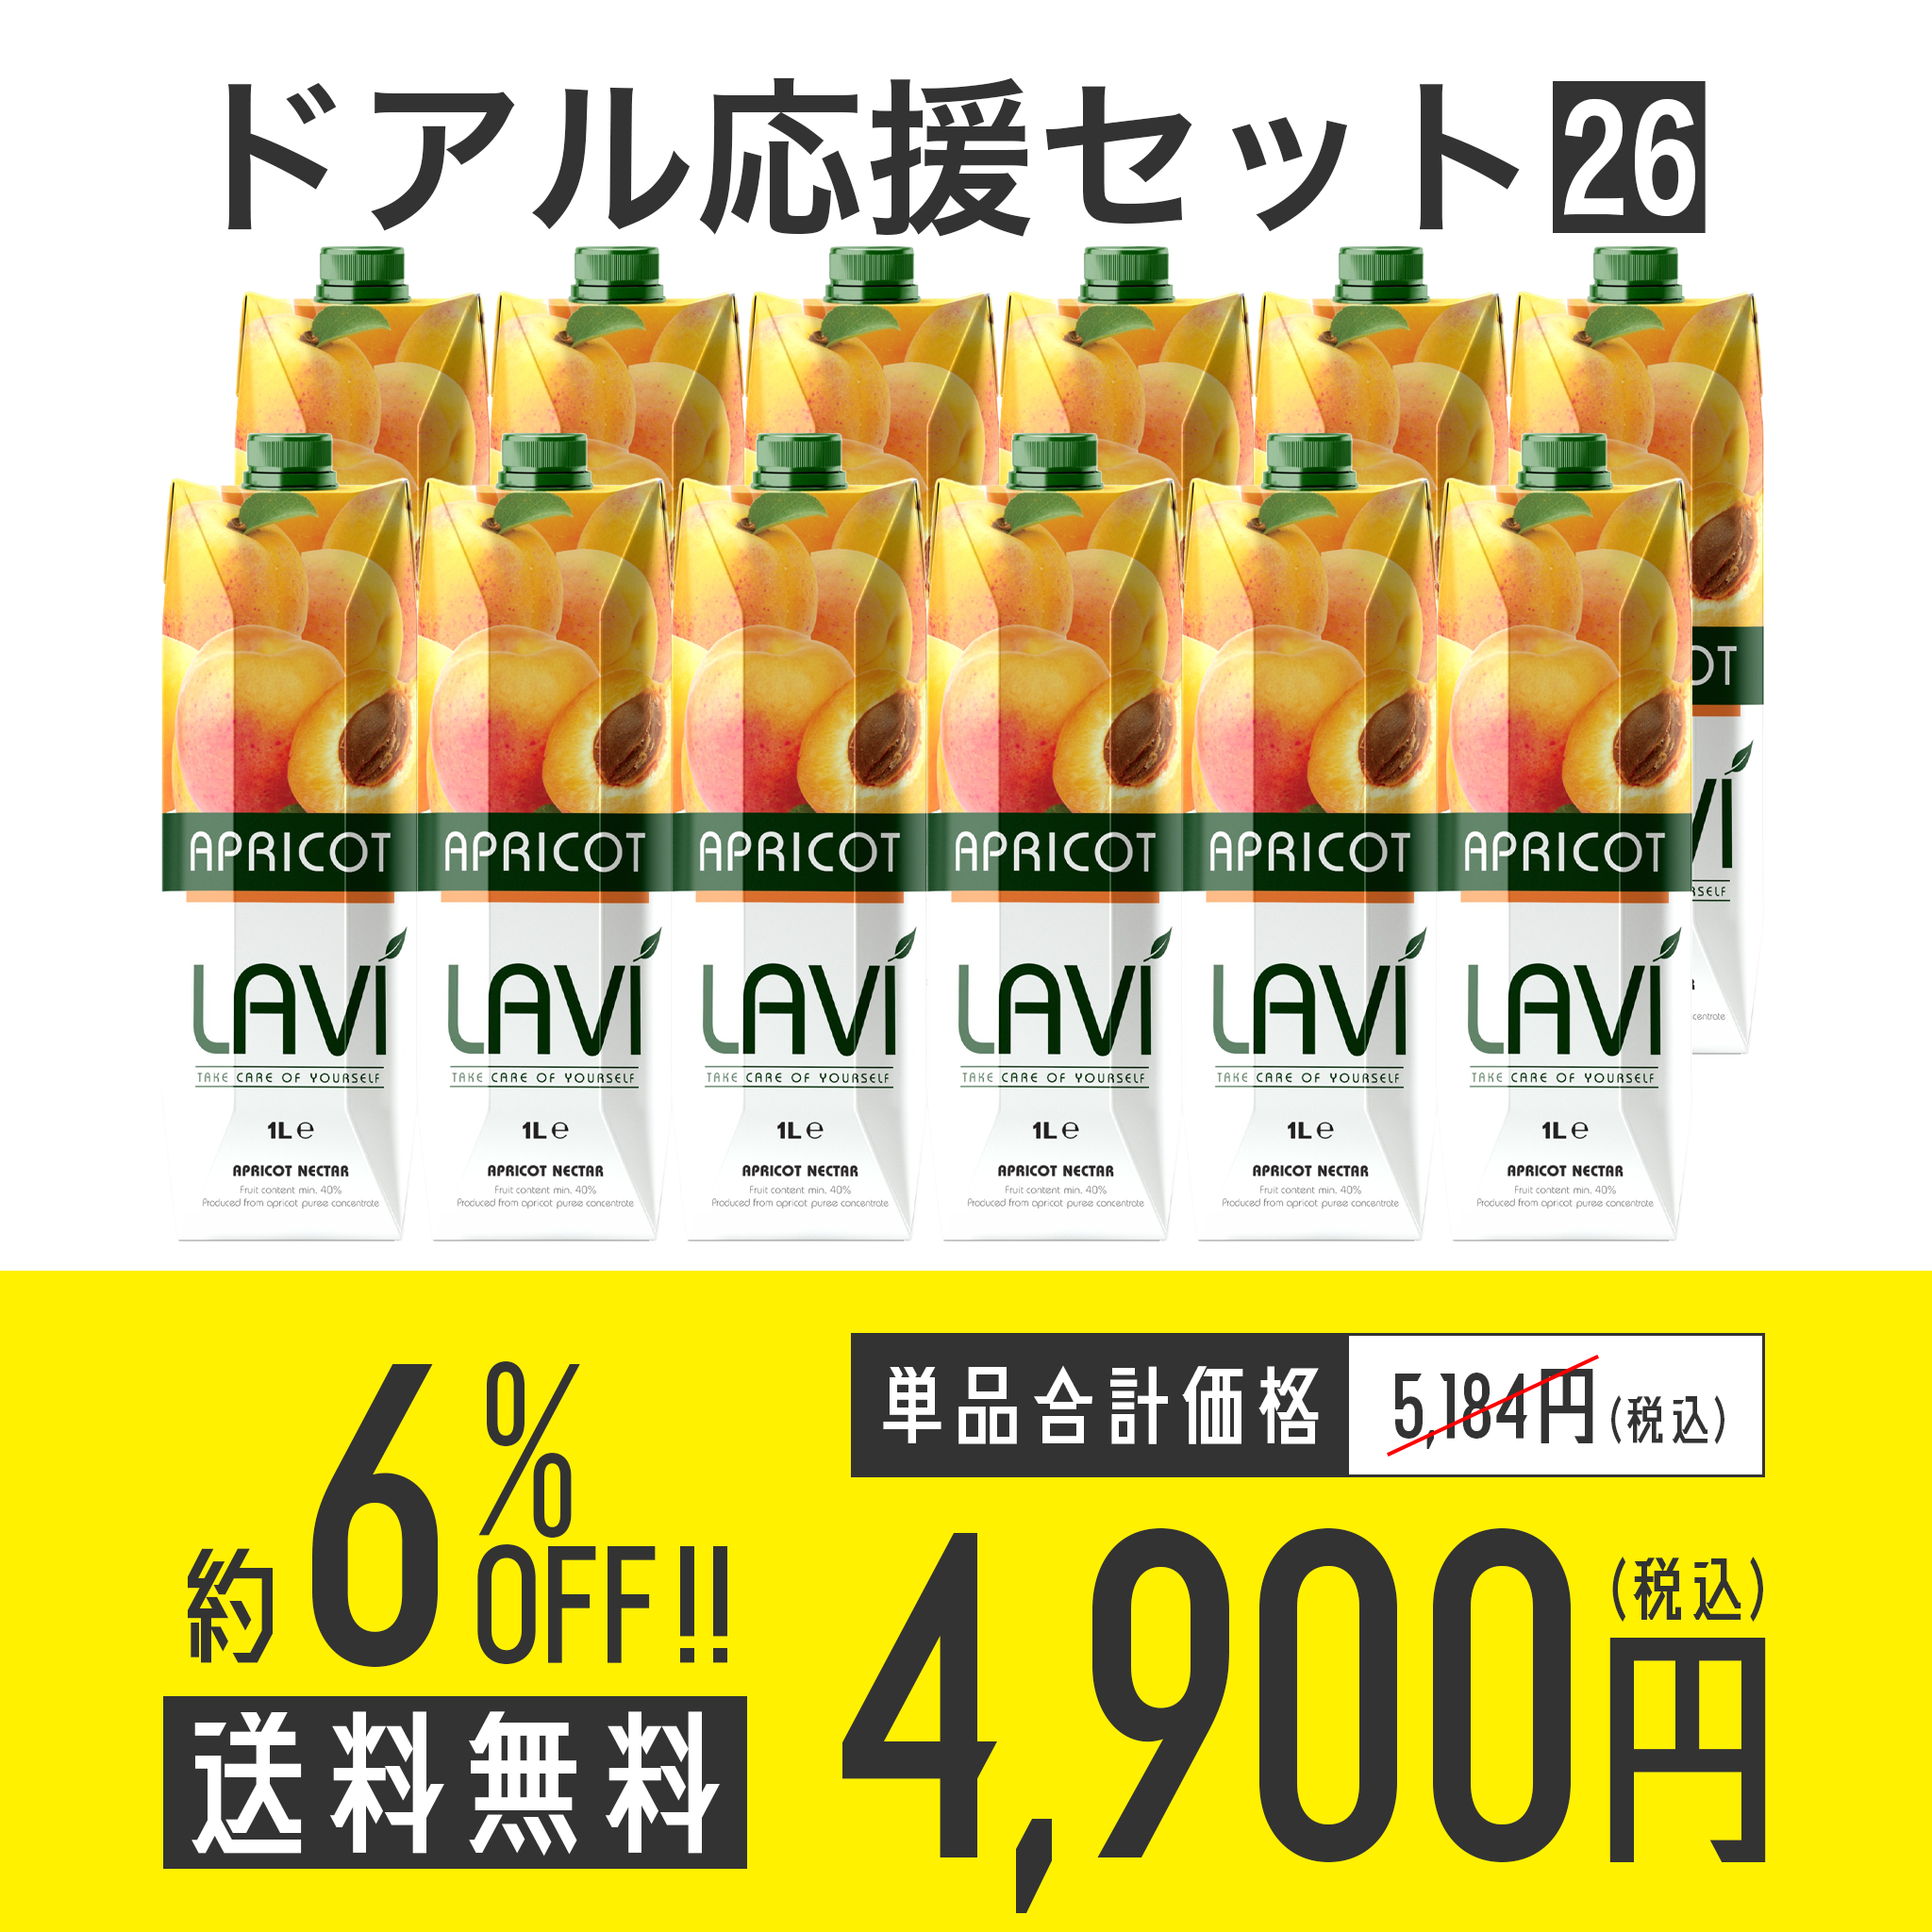 【送料無料】ドアル応援セット No.26 Lavi アプリコットネクター 12本セット